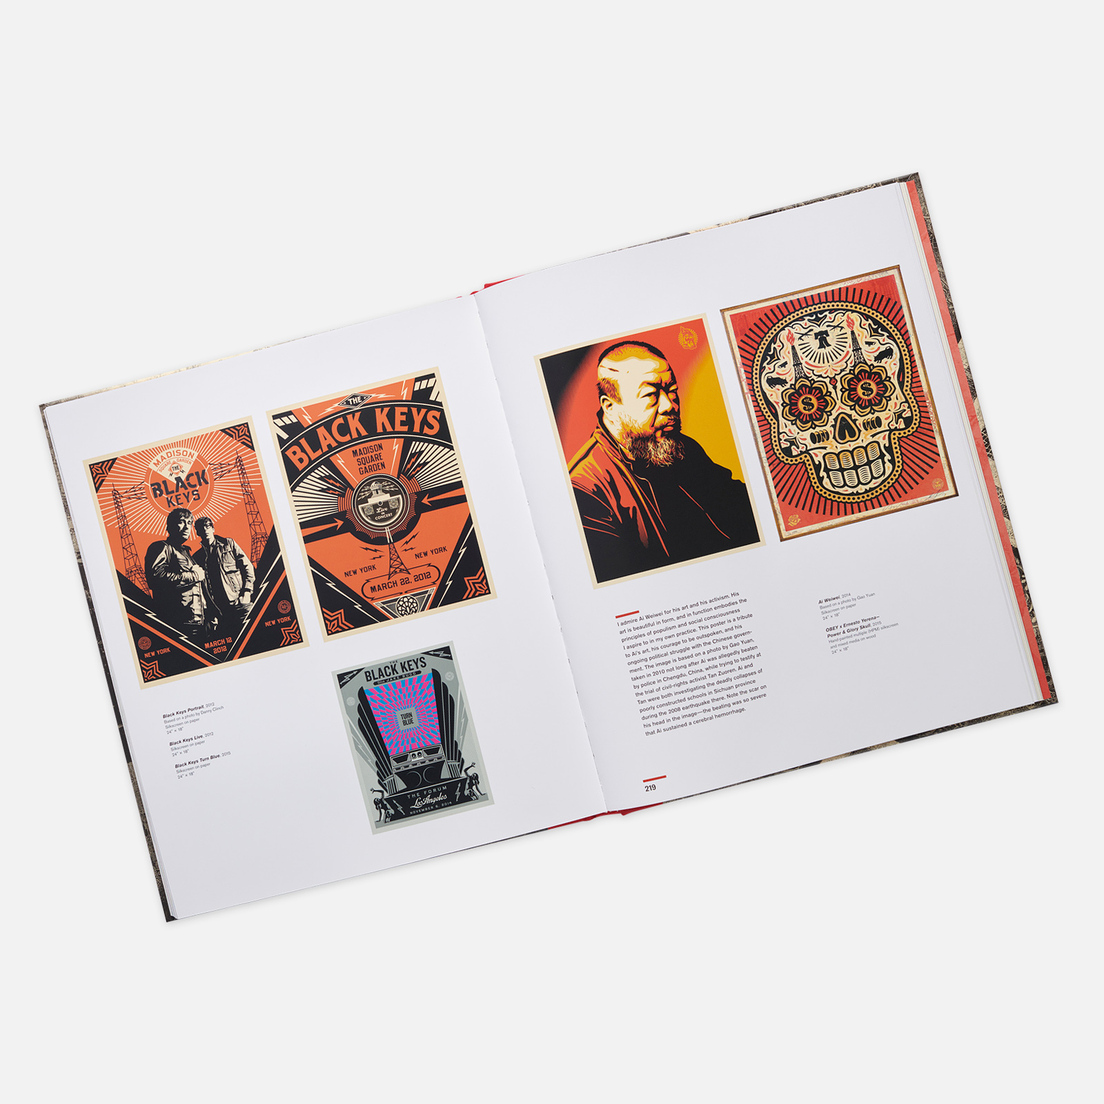 Rizzoli Книга Covert to Overt: The Under/Overground Art of Shepard Fairey